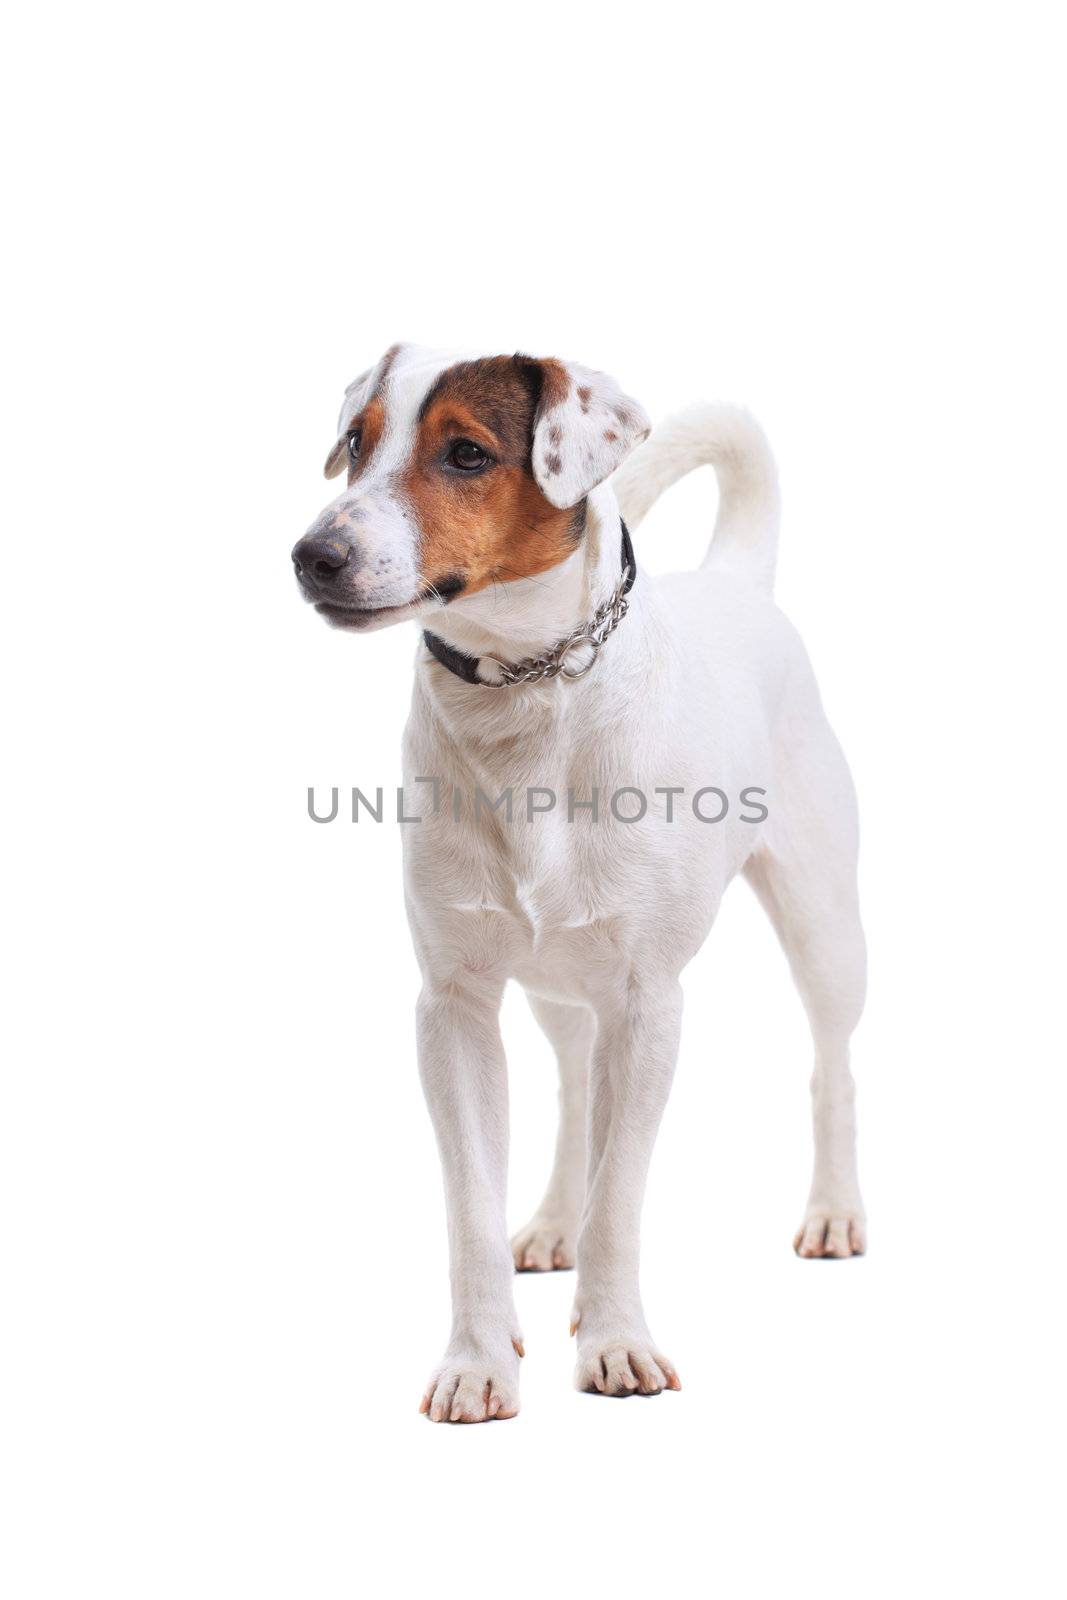 Jack Russel Terrier dog portrait by kokimk